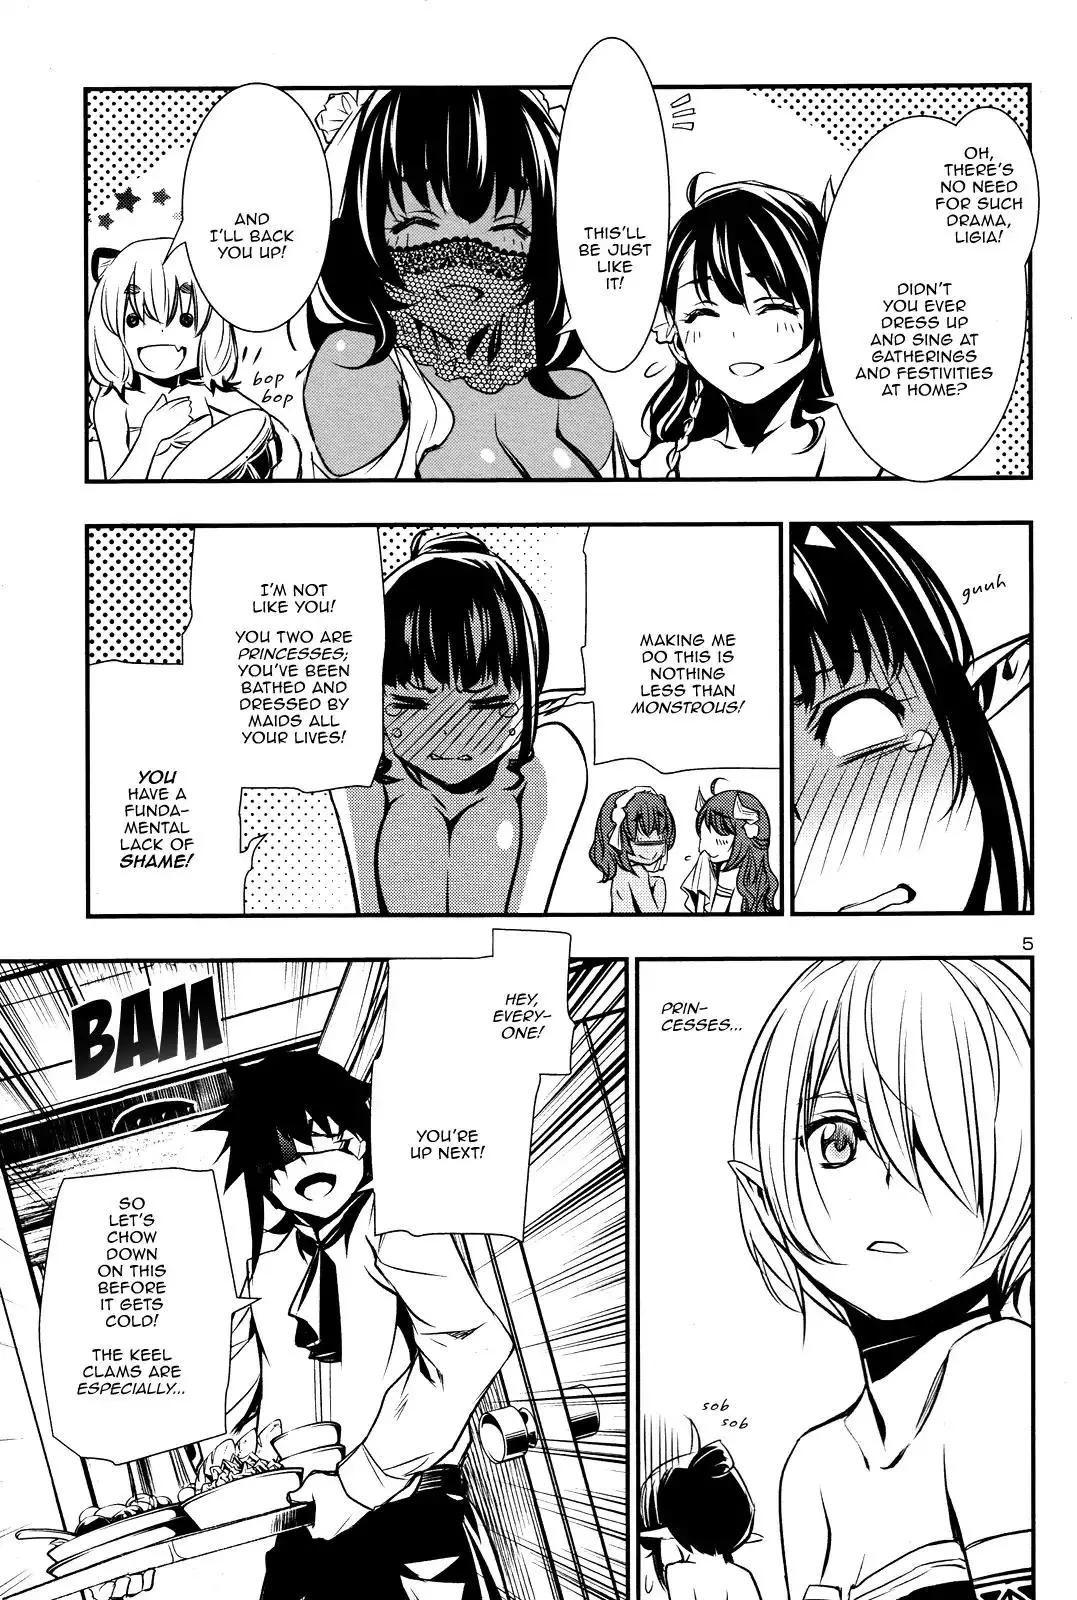 Shinju no Nectar - 15 page 3